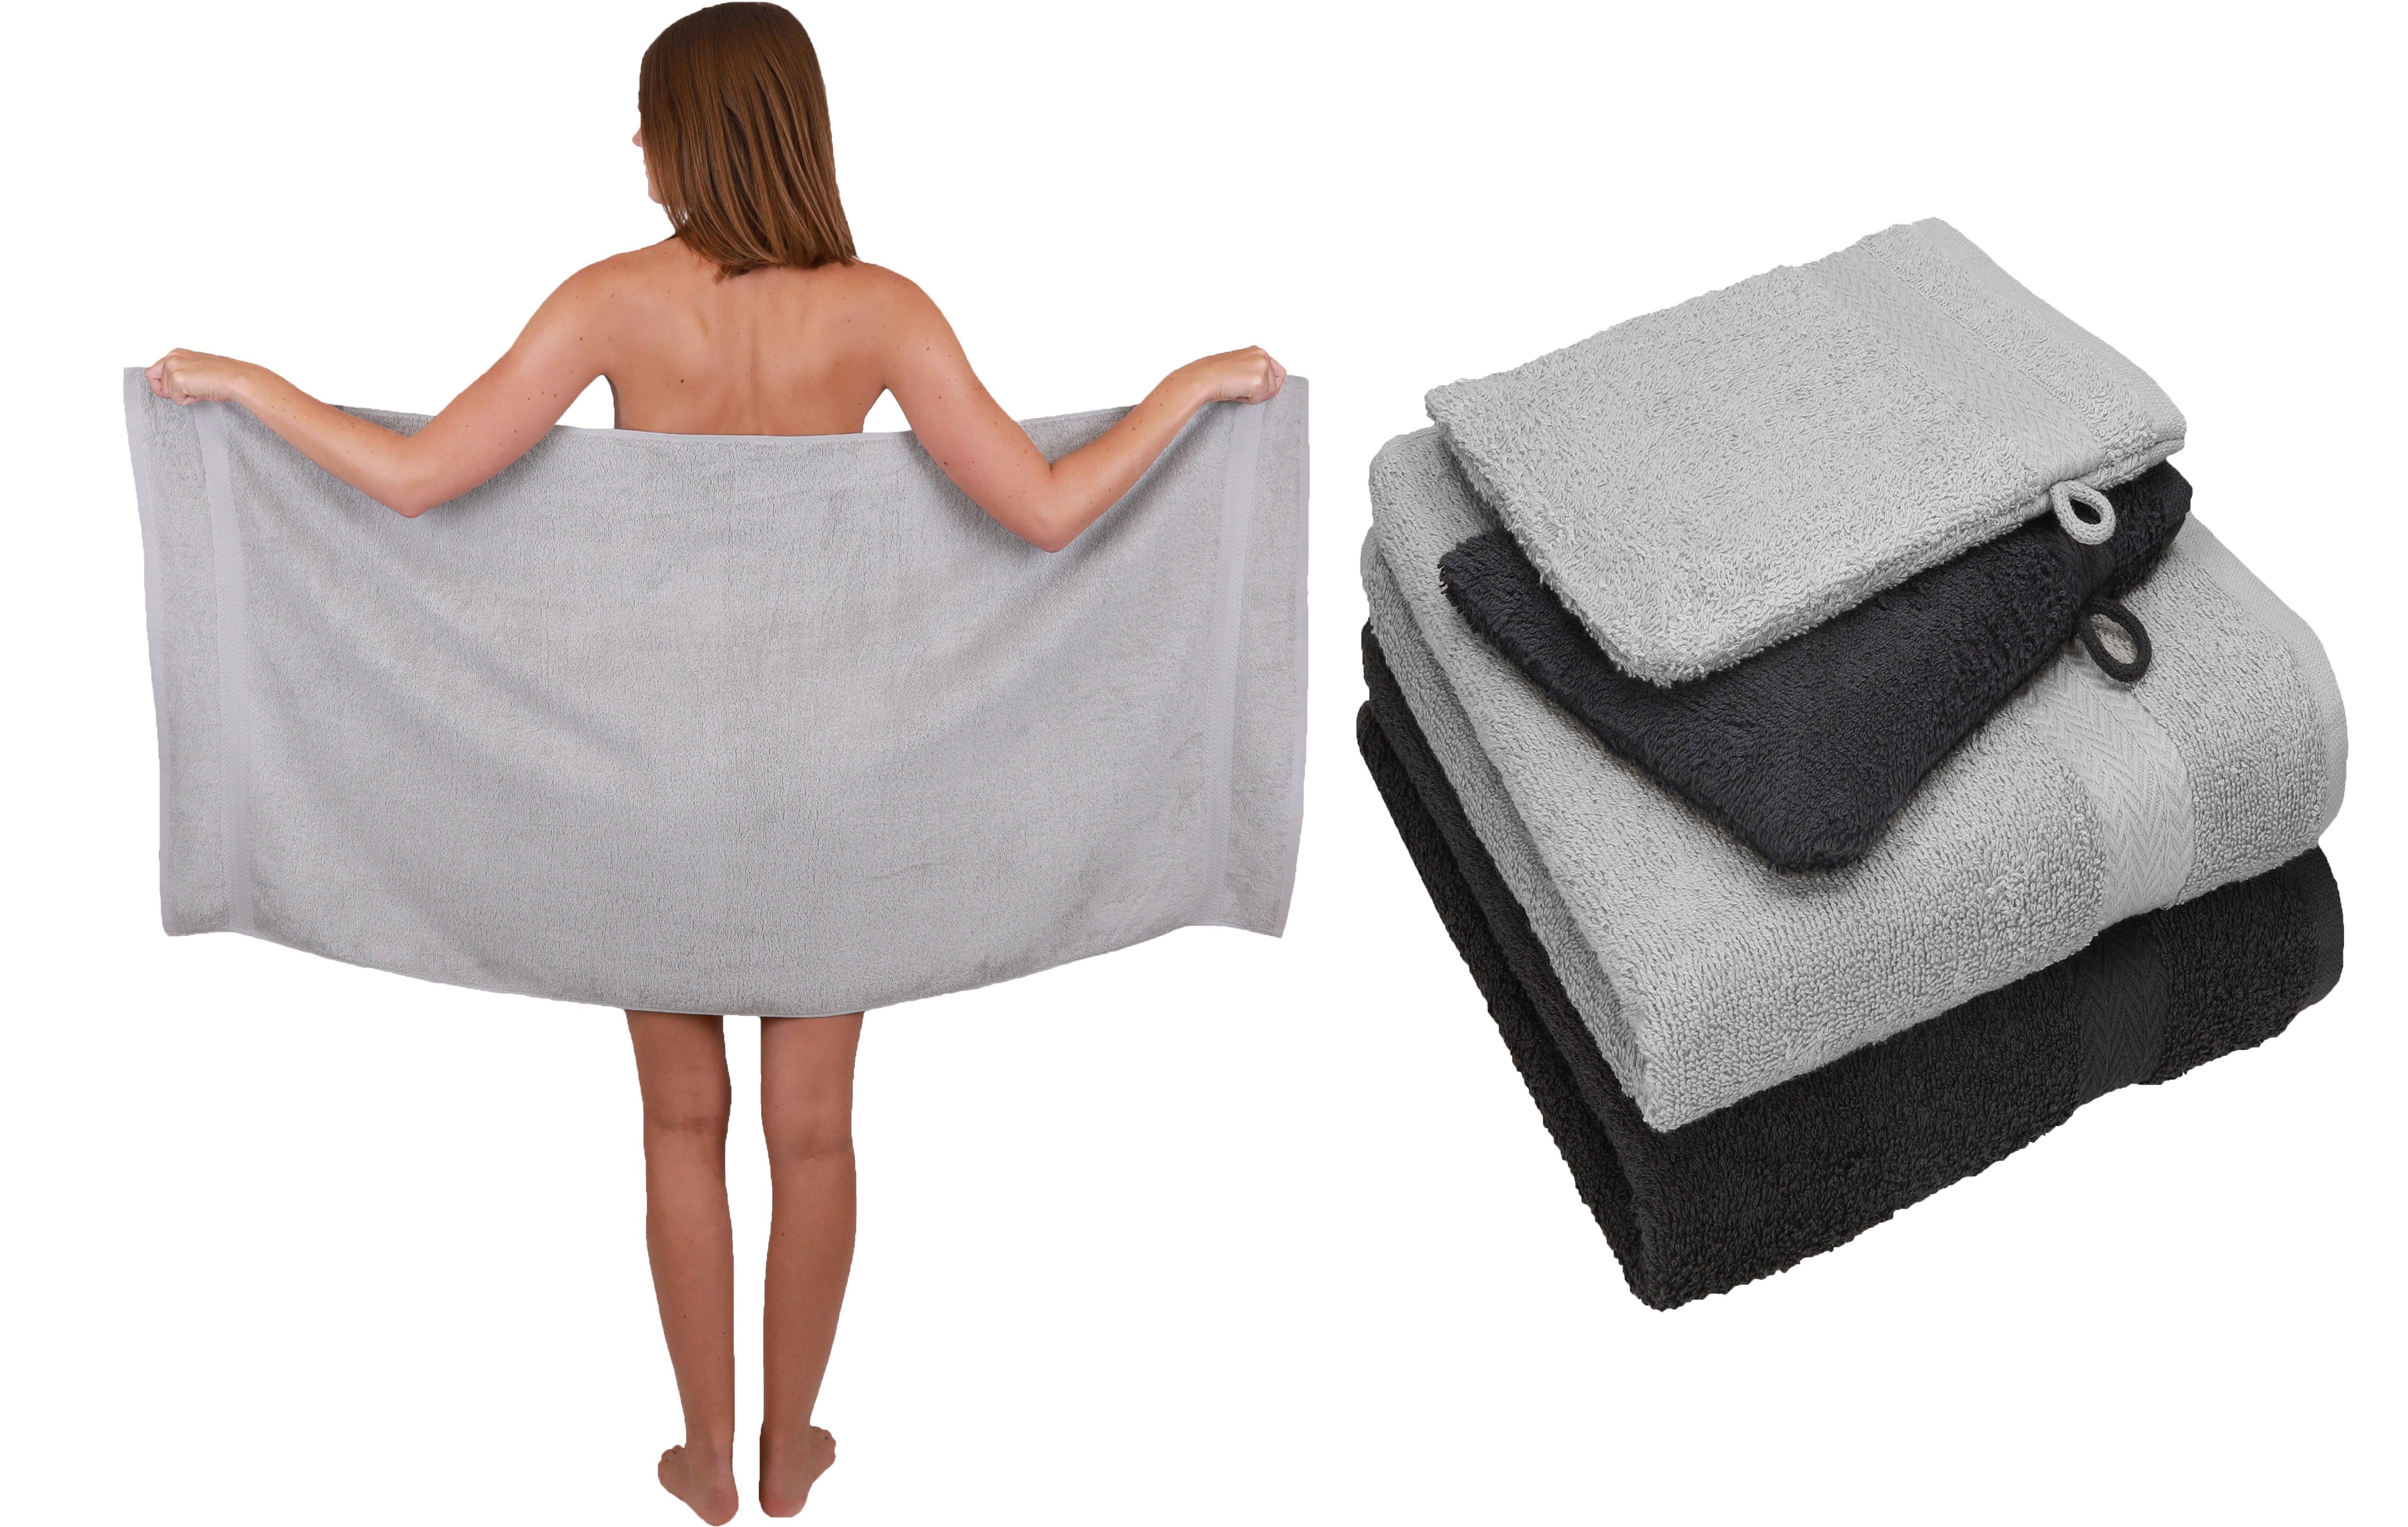 Betz Handtuch Set 5 TLG. Handtuch Set Single Pack 100% Baumwolle 1 Duschtuch 2 Handtücher 2 Waschhandschuhe, 100% Baumwolle silber grau-graphit grau